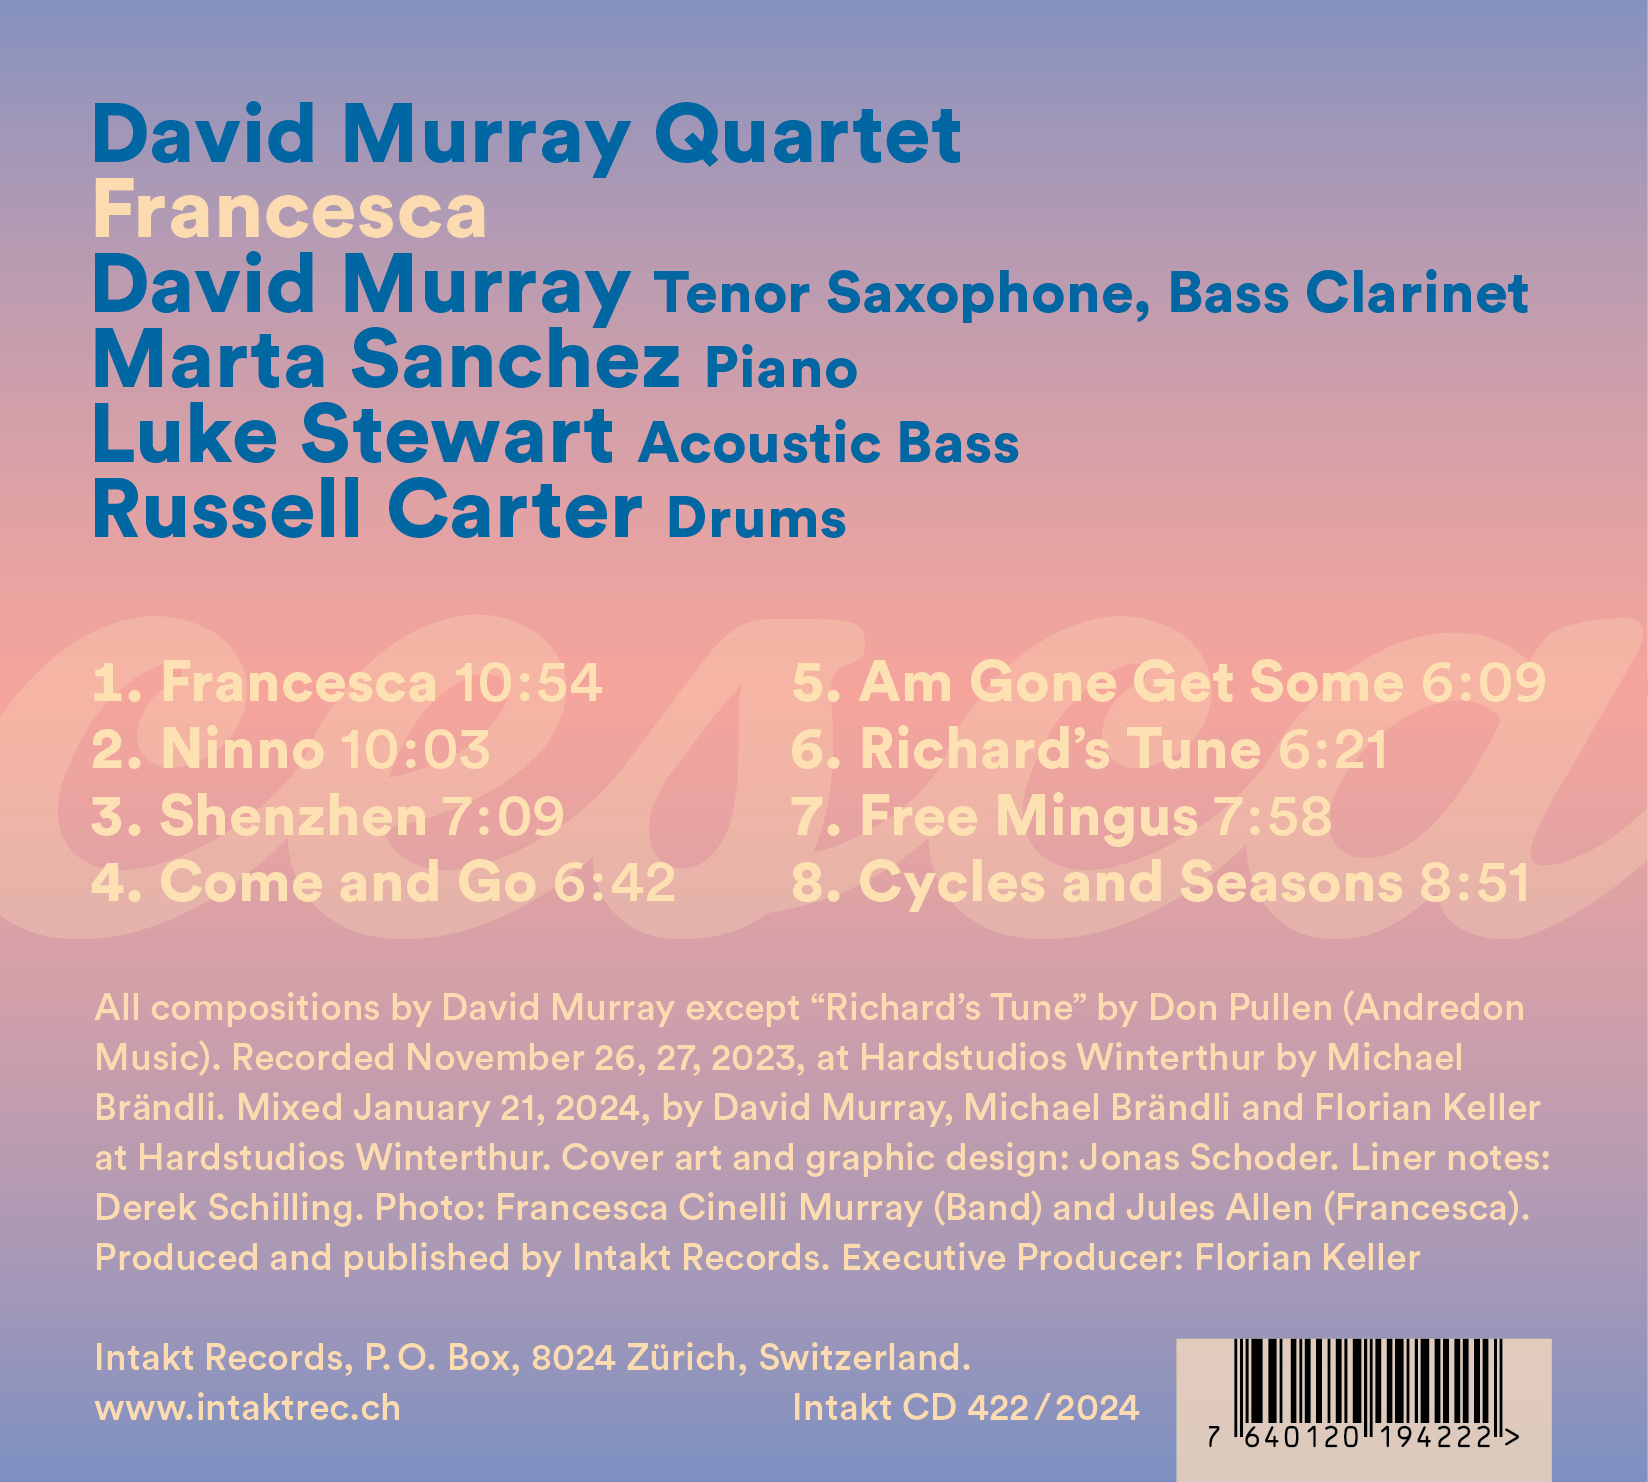 DAVID MURRAY QUARTET
FRANCESCA. Intakt Records back cover 422